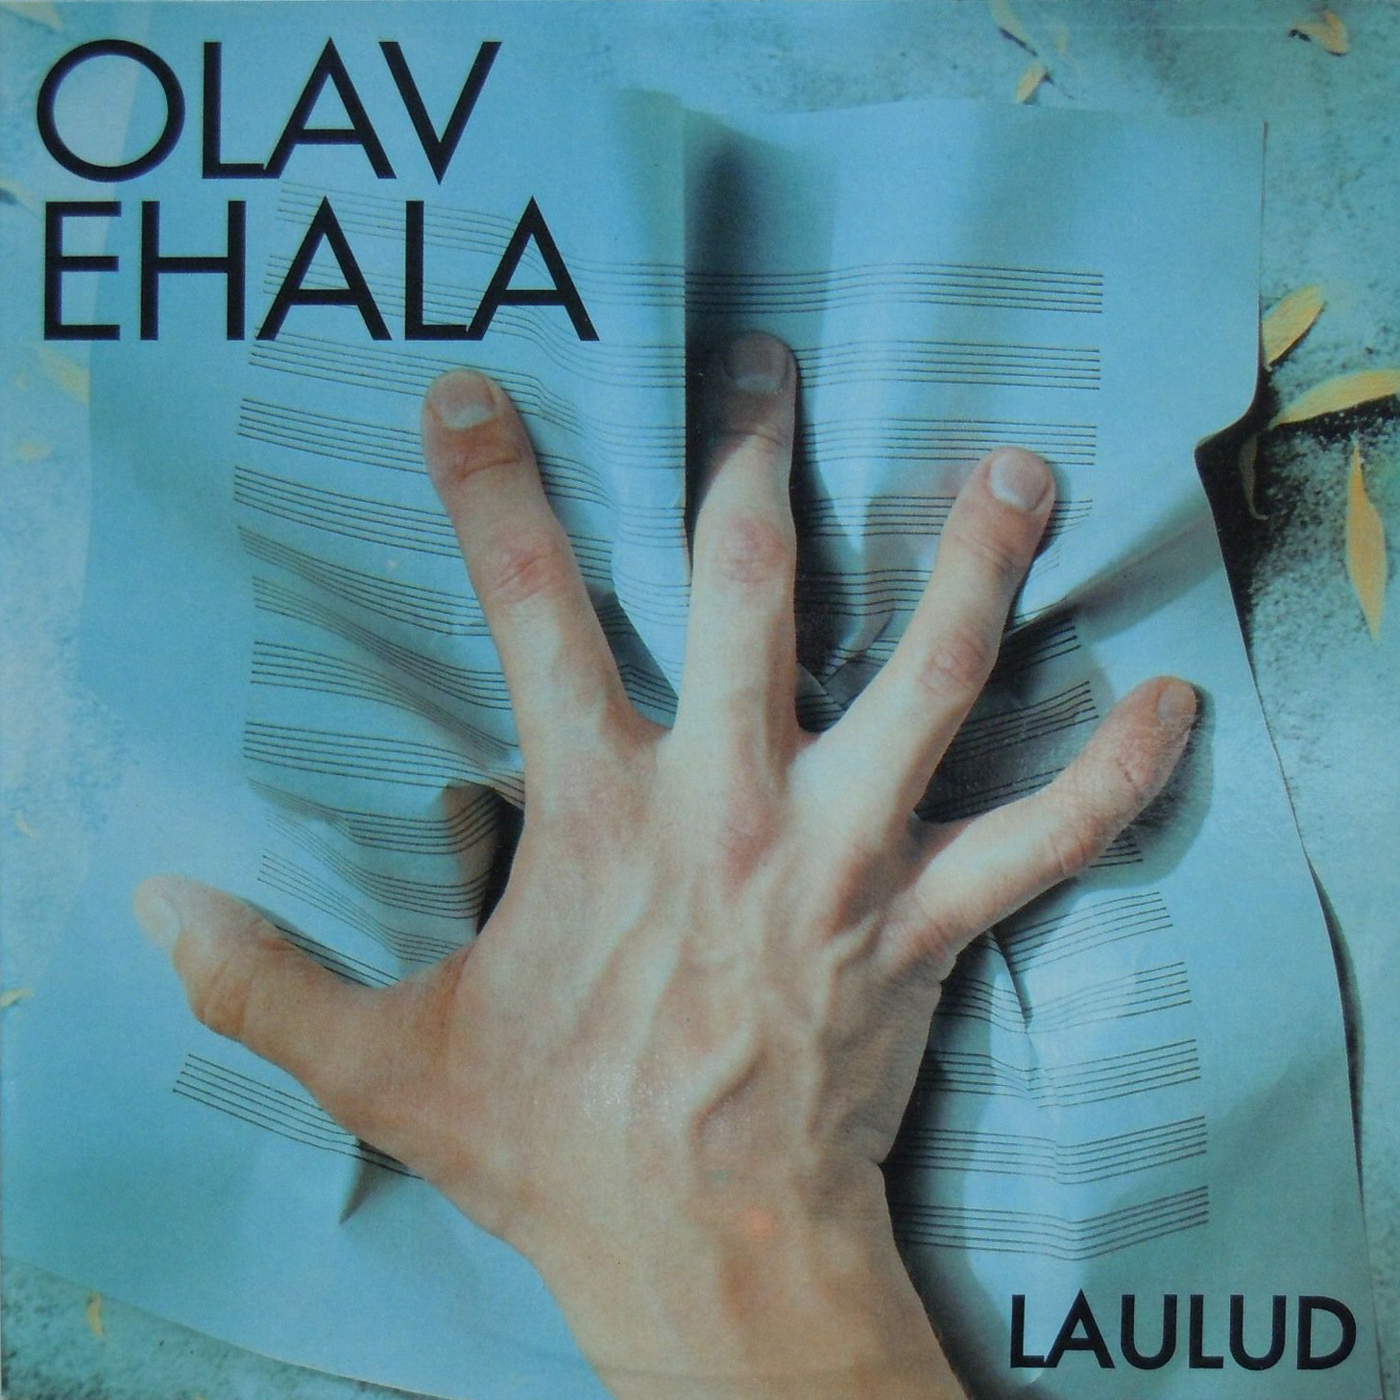 см. С60 32295 Olav EHALA (Олав Эхала) "Laulud (Песни)" (на эстонском языке)